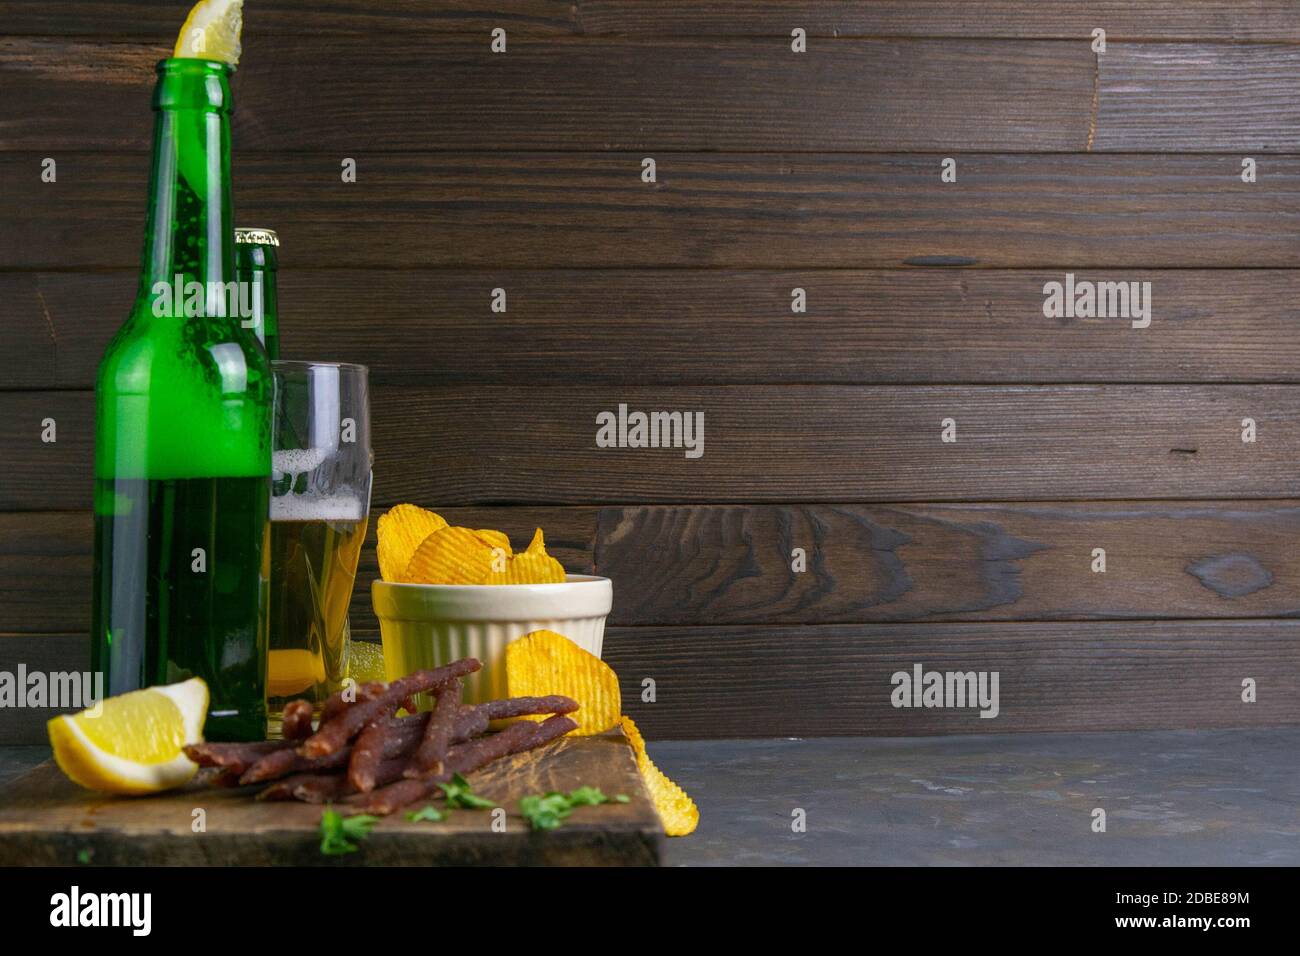 Spuntino al caviale di pesce con birra, limoni e patatine su tavola di legno scuro. Spuntino a base di pesce con birra. Vista frontale con spazio libero. Foto Stock